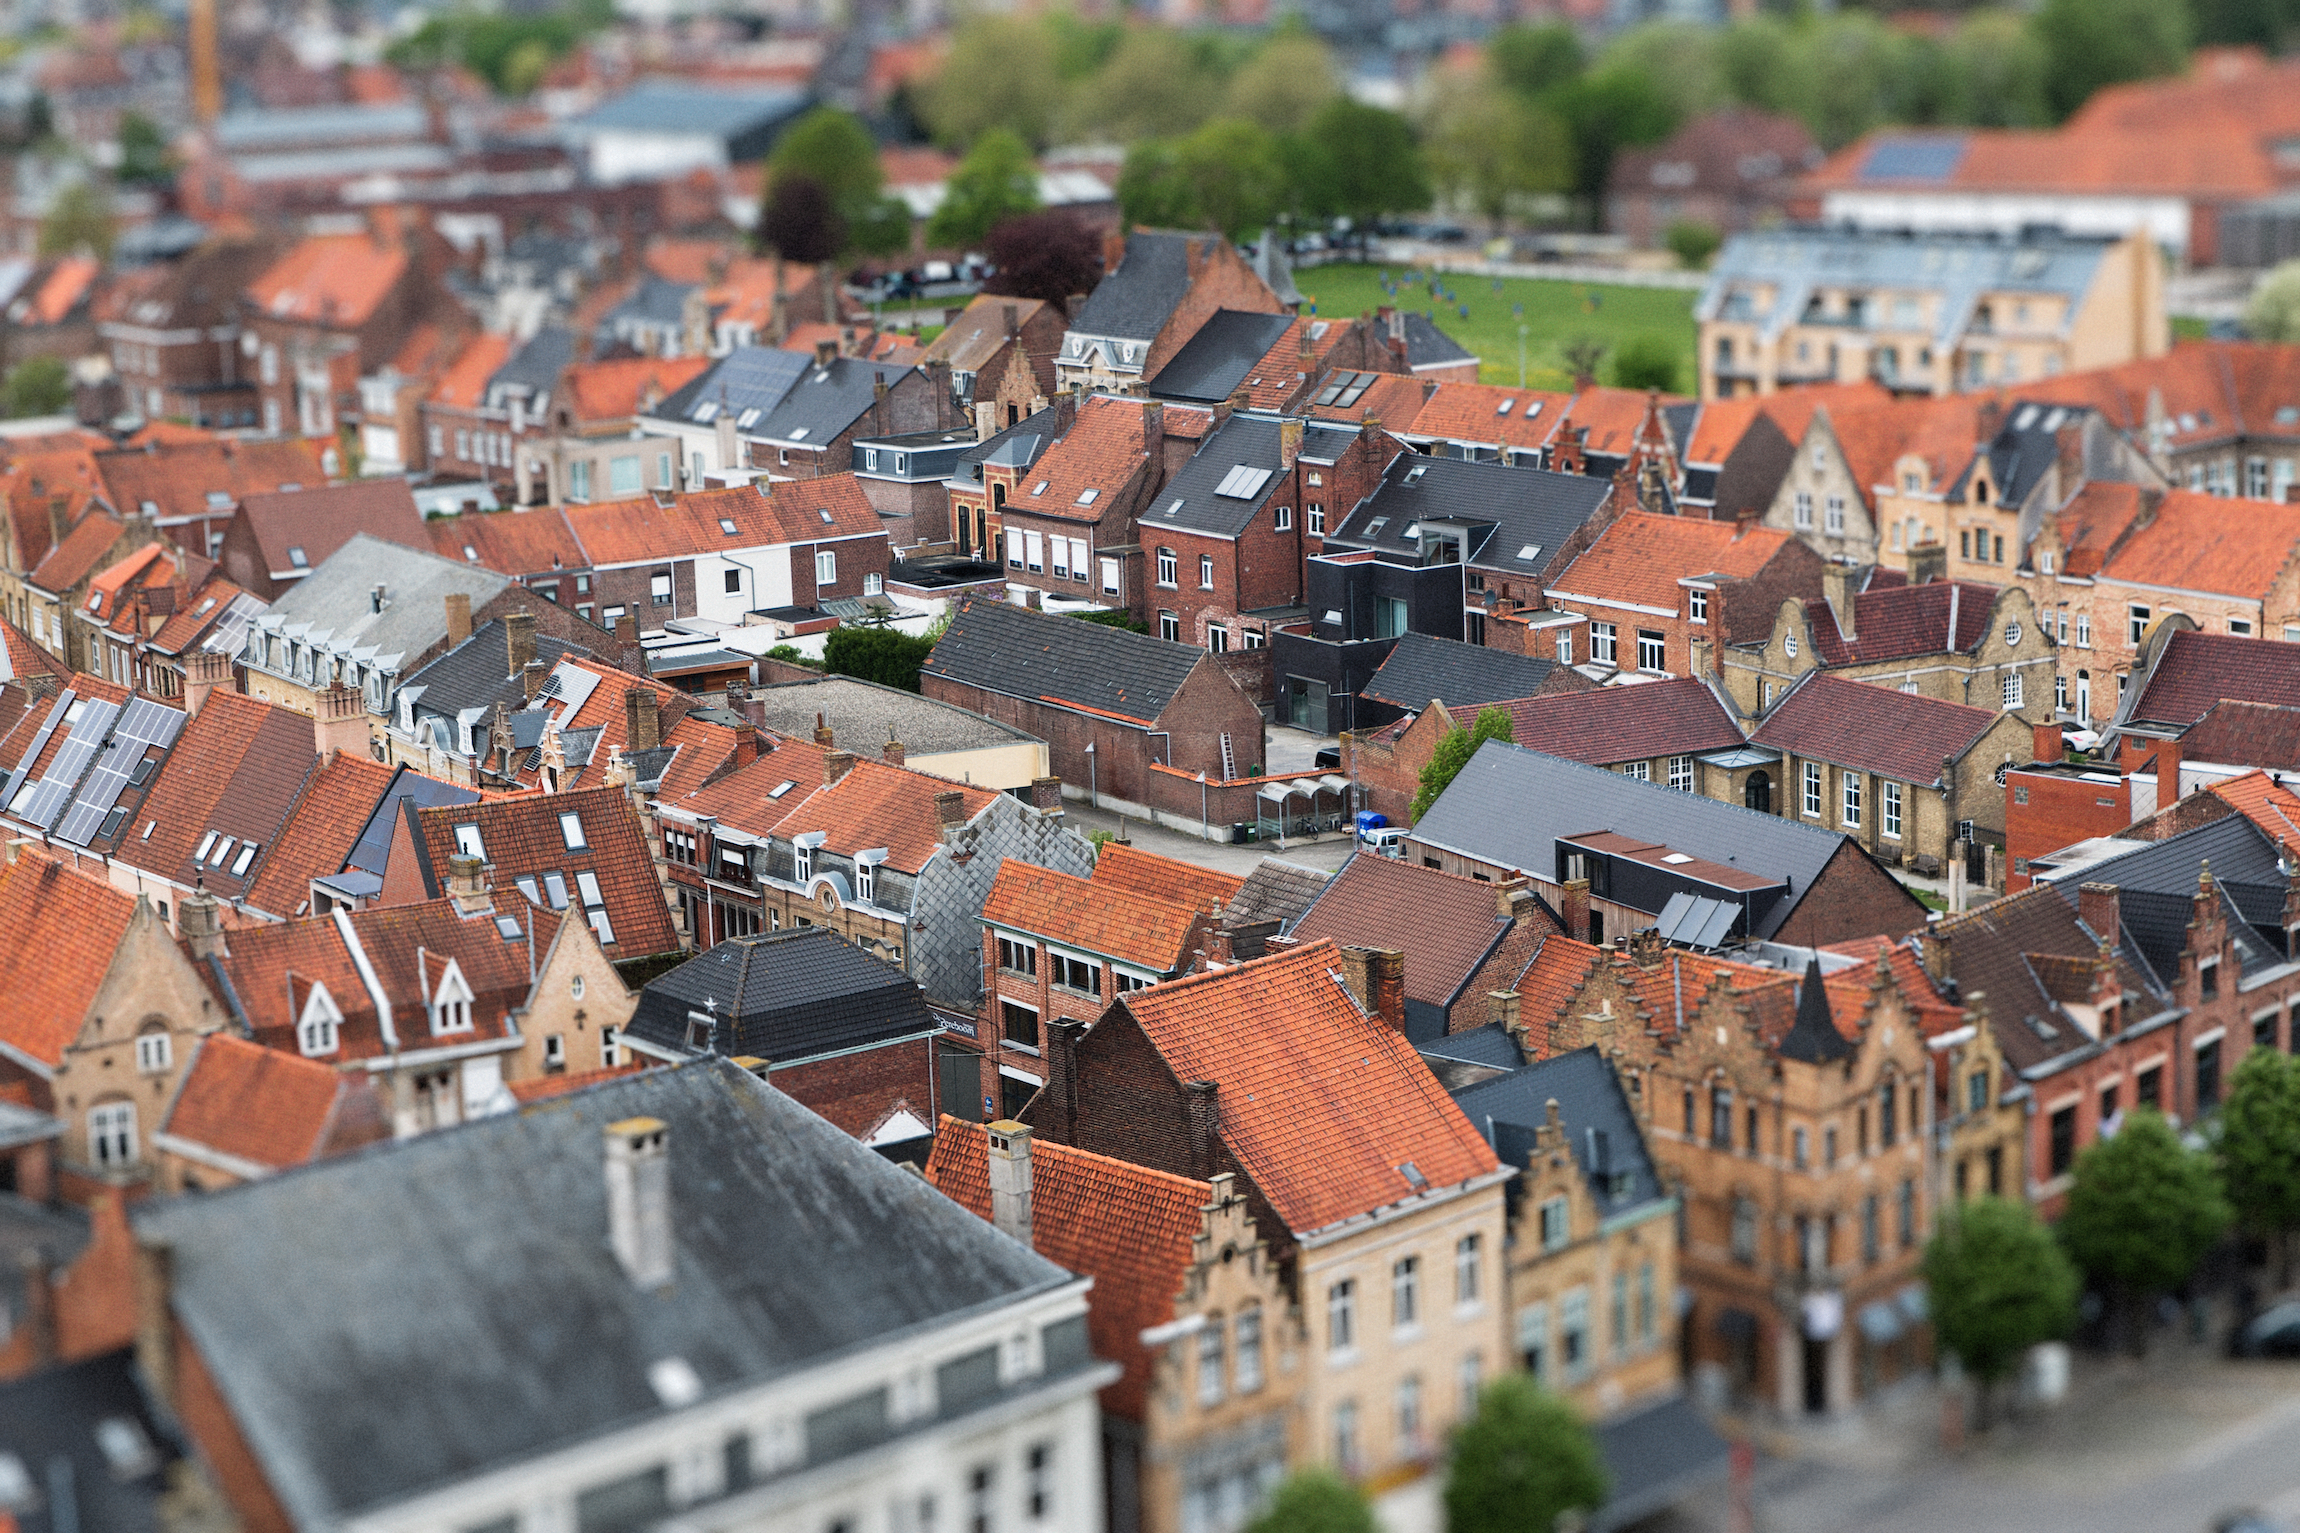 Na zdjęciu widać zapierający dech w piersiach widok miasta Ypres w Belgii z efektem rozmycia.